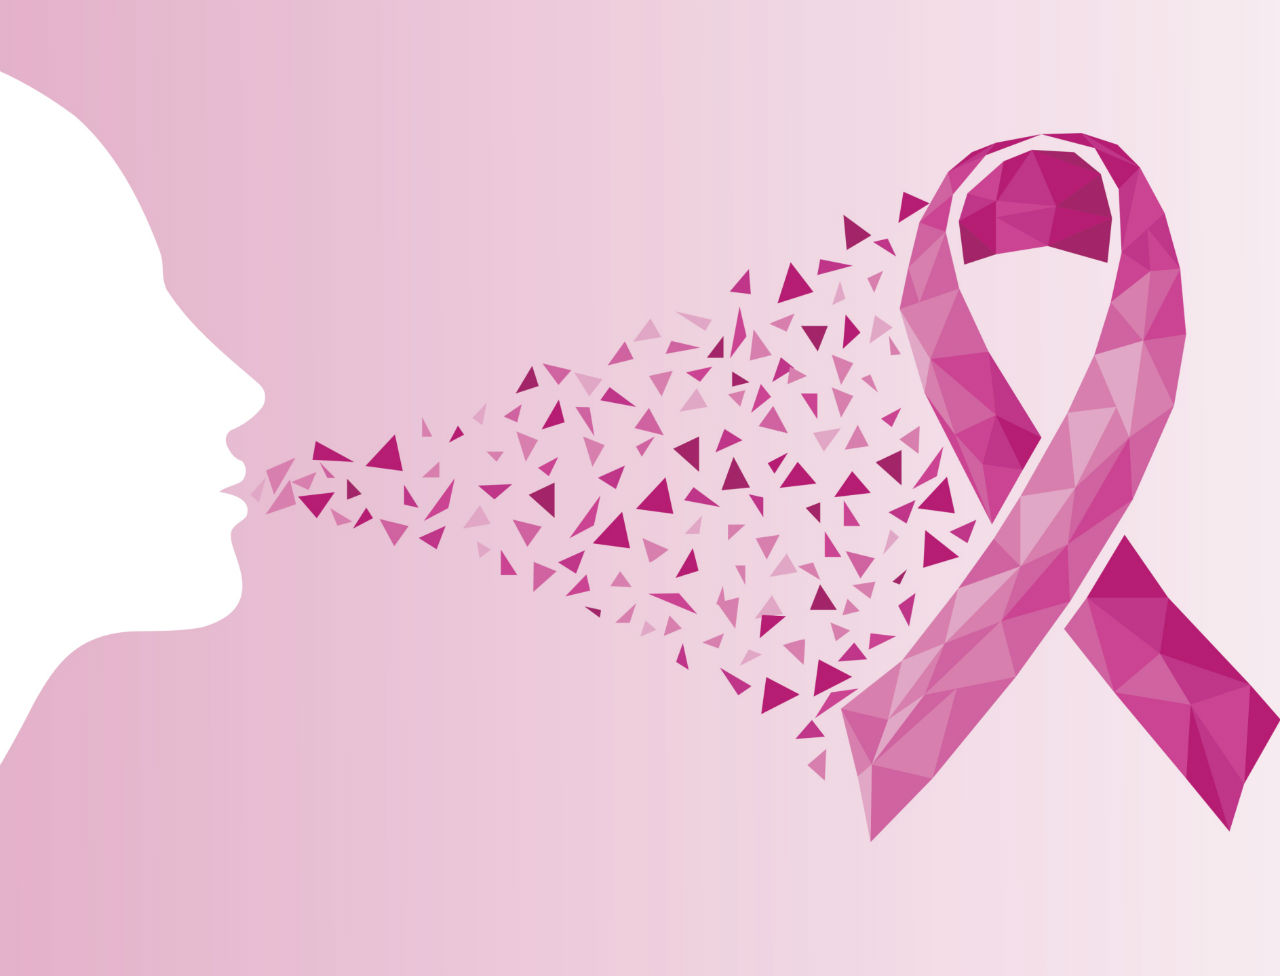 أعراض لسرطان الثدي تقود لمضاعفات خطيرة، تجنبيها ؟